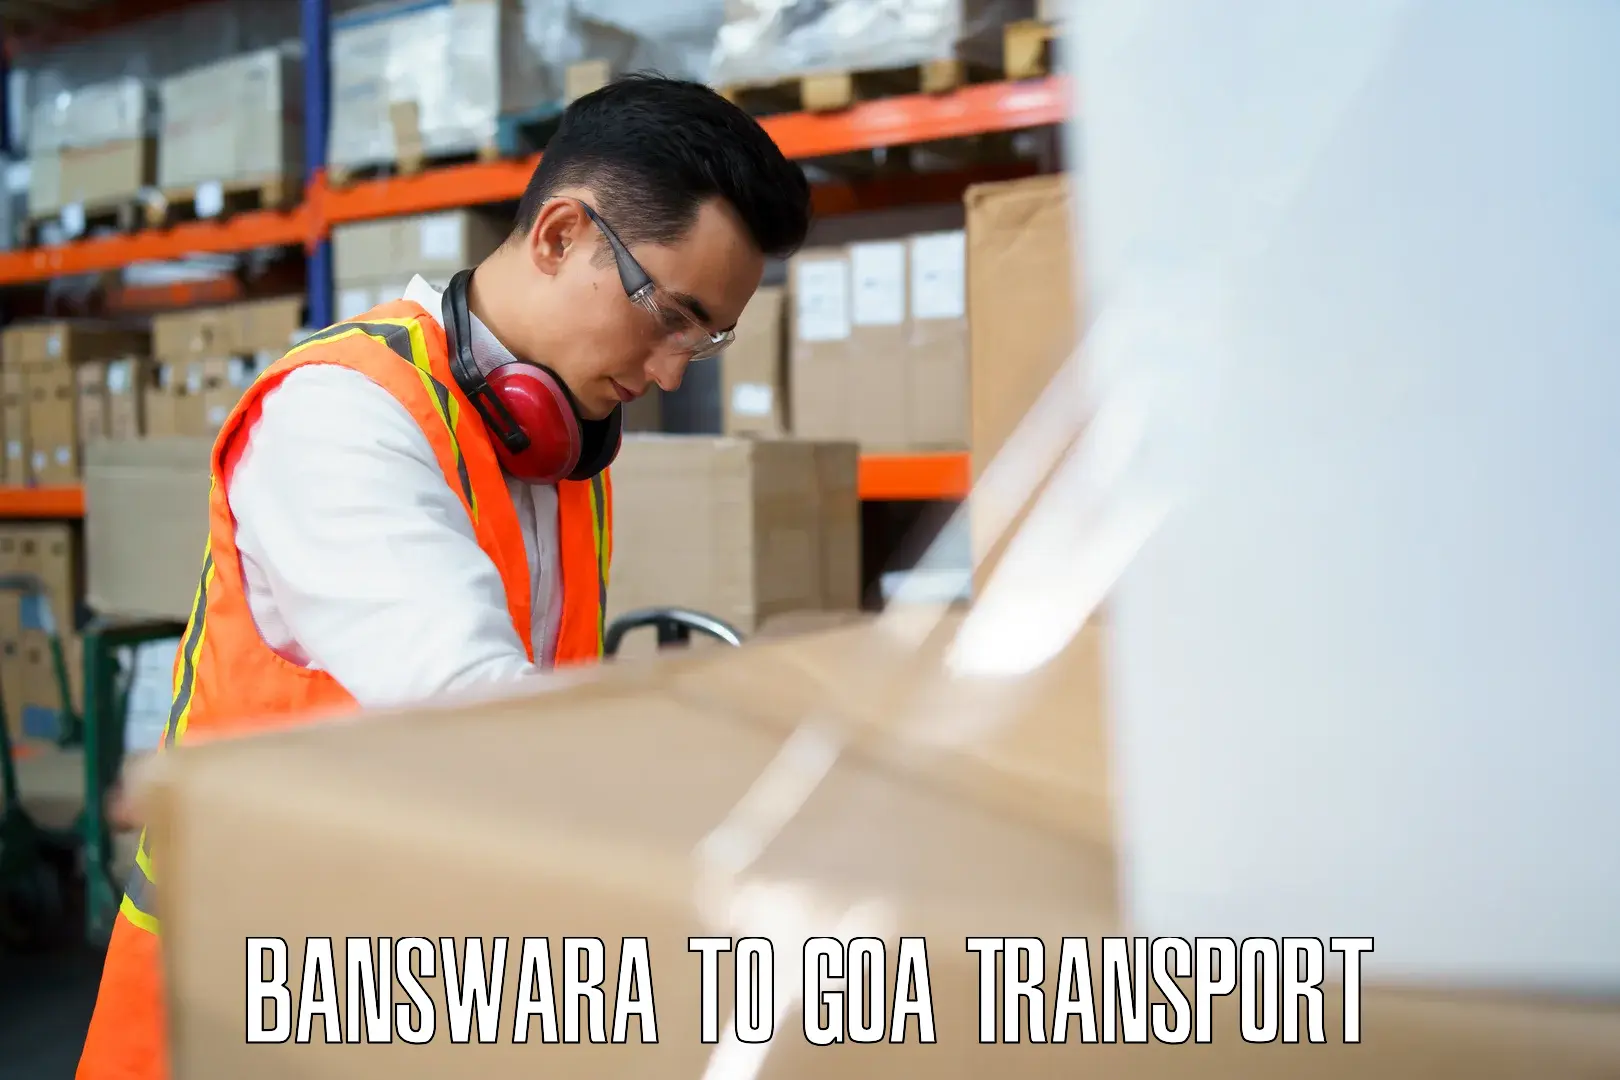 Delivery service Banswara to Ponda